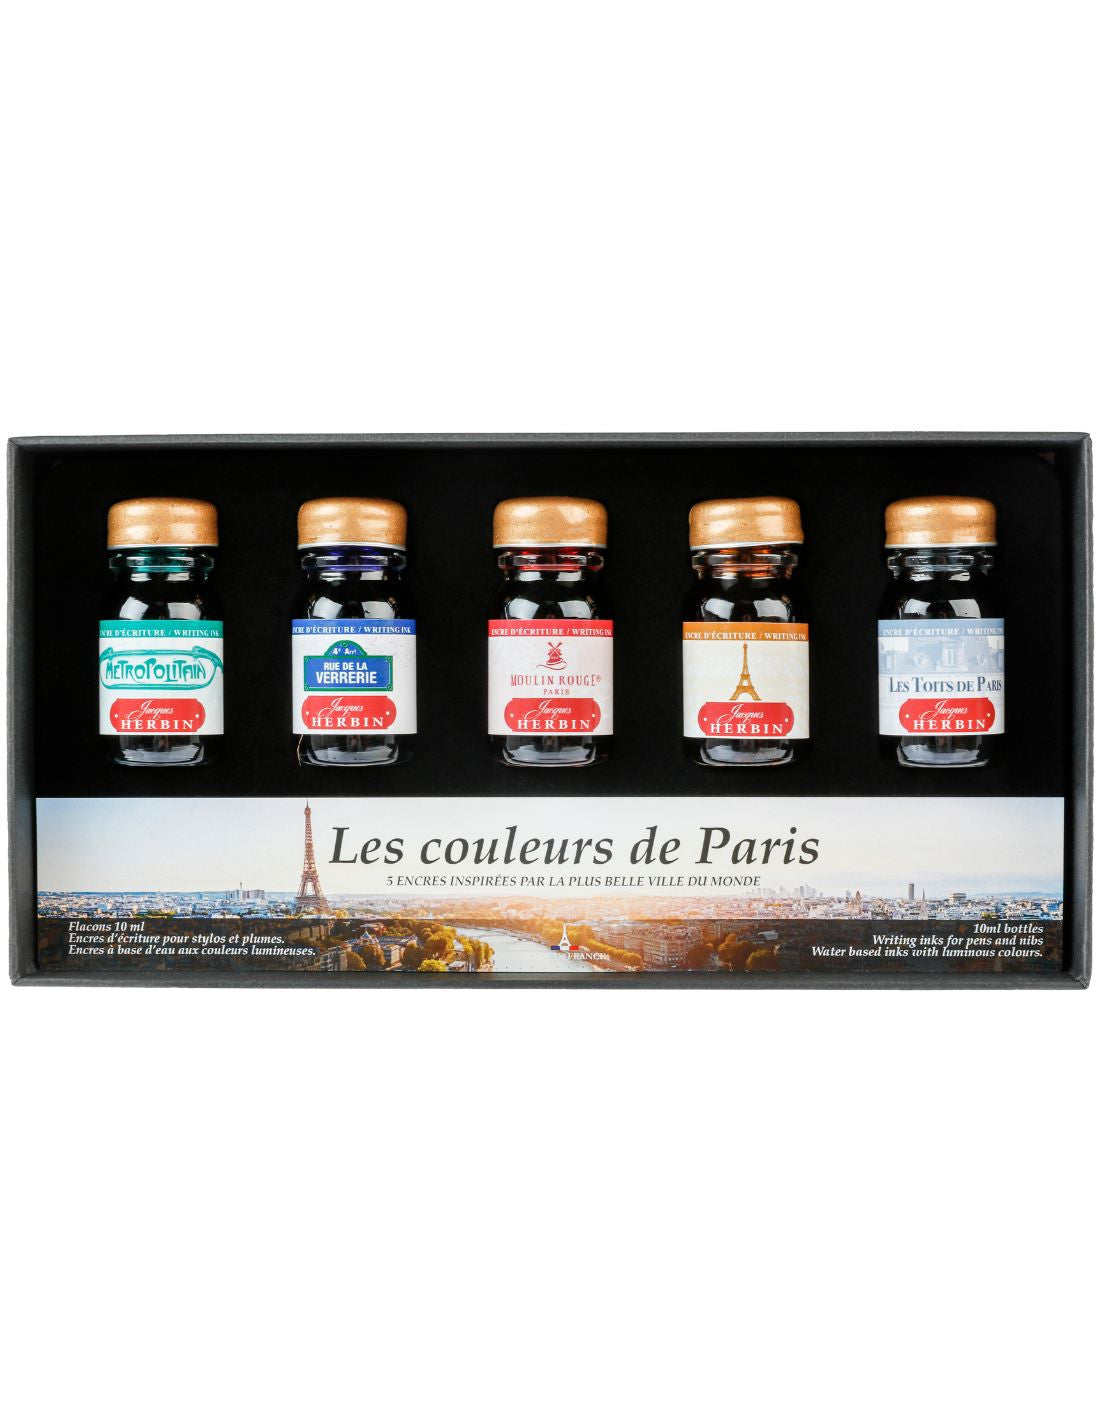 Herbin - Paris collection - Les couleurs de Paris Set - 5 inks (10 ml each)